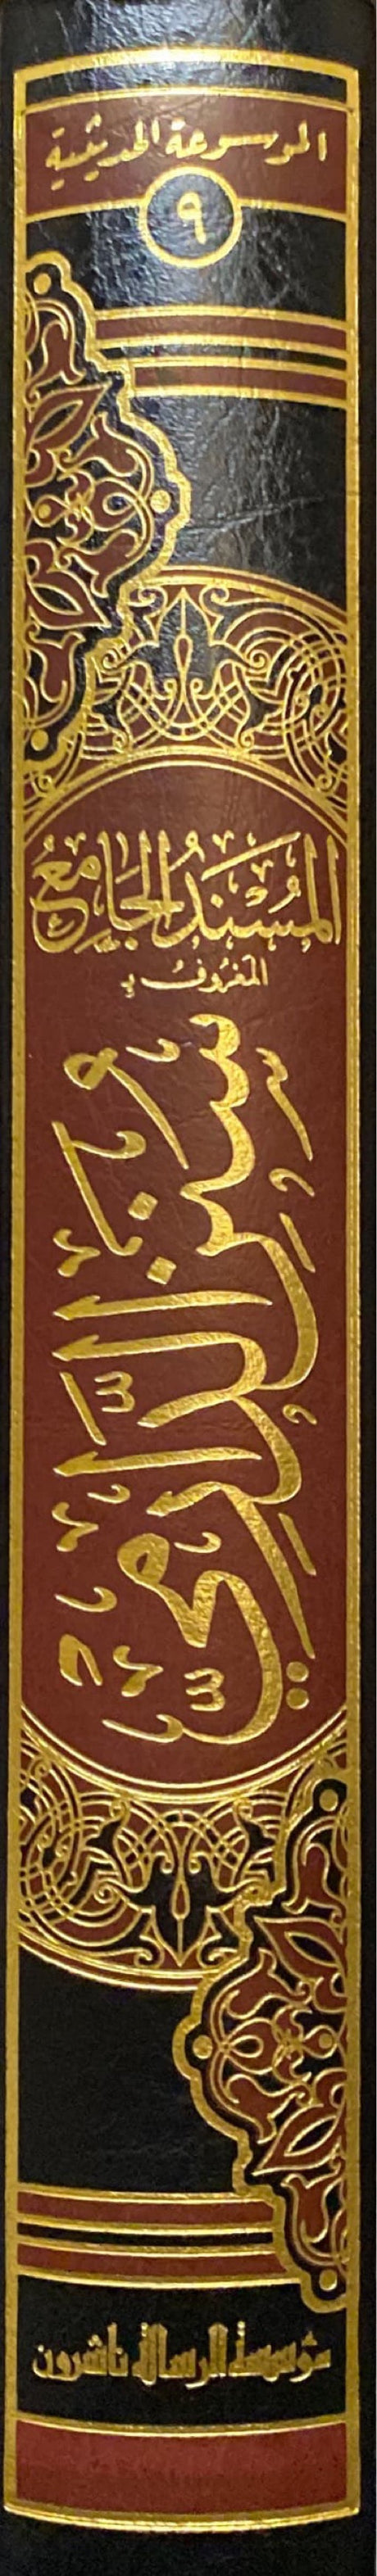 المسند الجامع المعروف بسنن الدارمي Sunnan Ad Darami (1 Vol)(Rissalah)